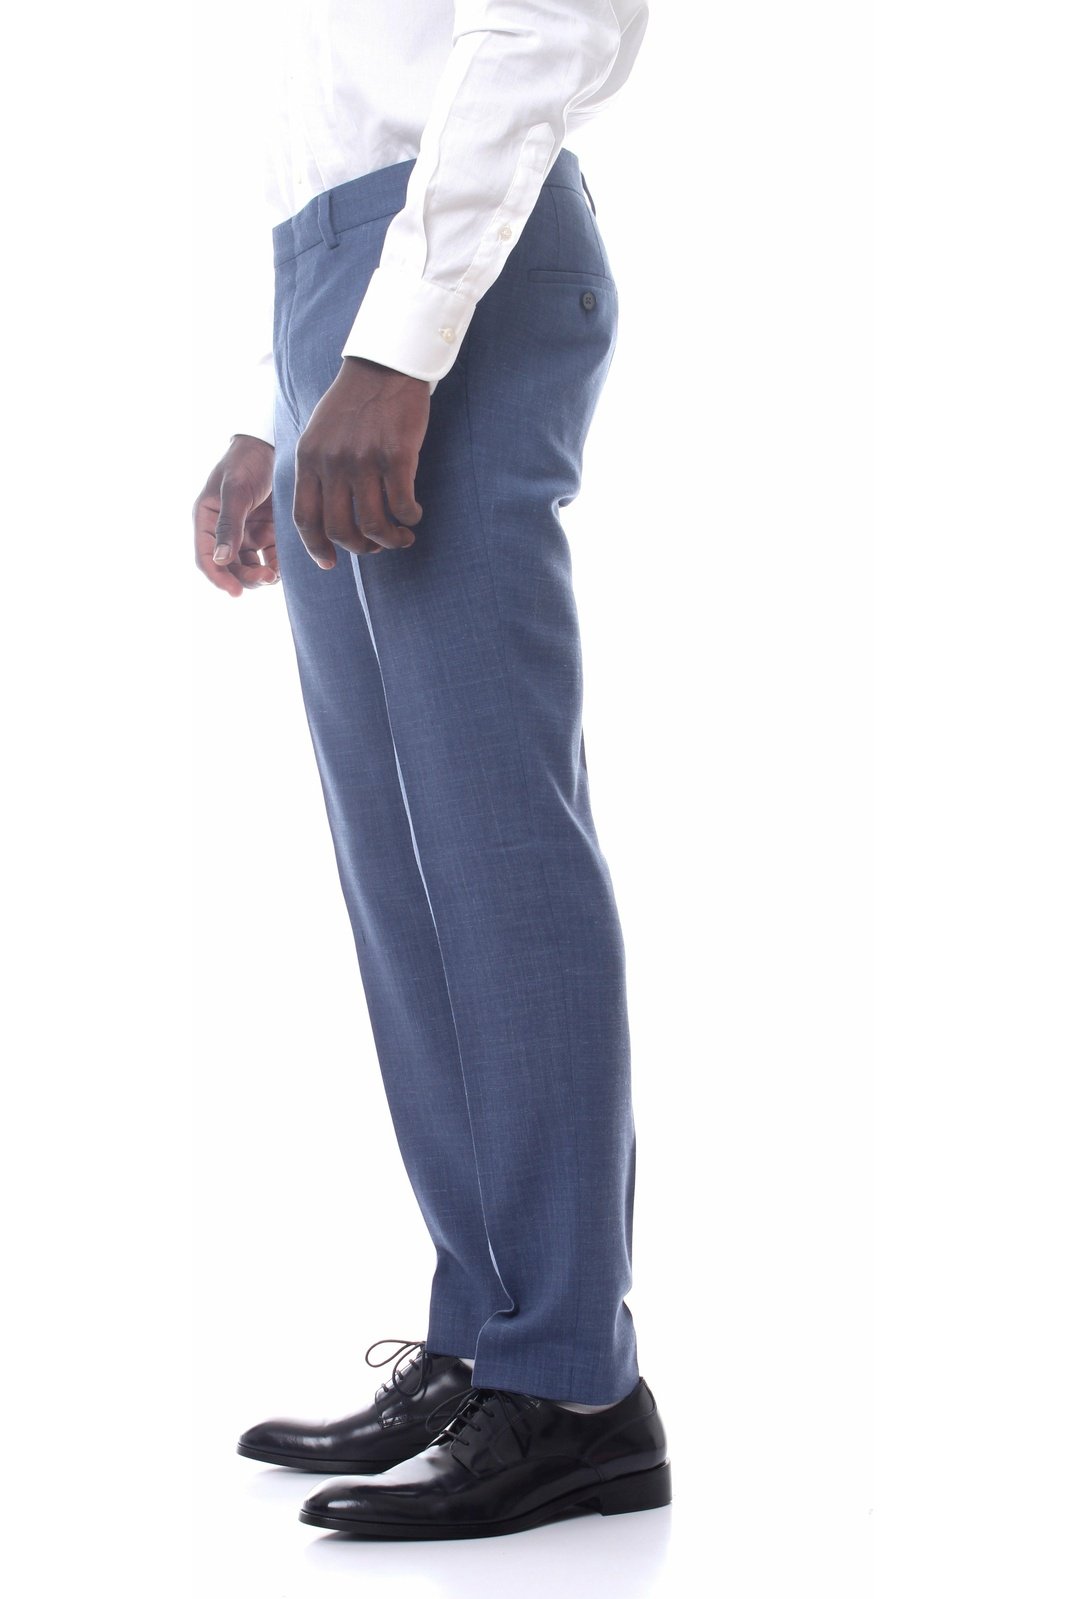 MICHAELKORS MK0SP01001 pantaloni taglio classico in cotone quattro tasche